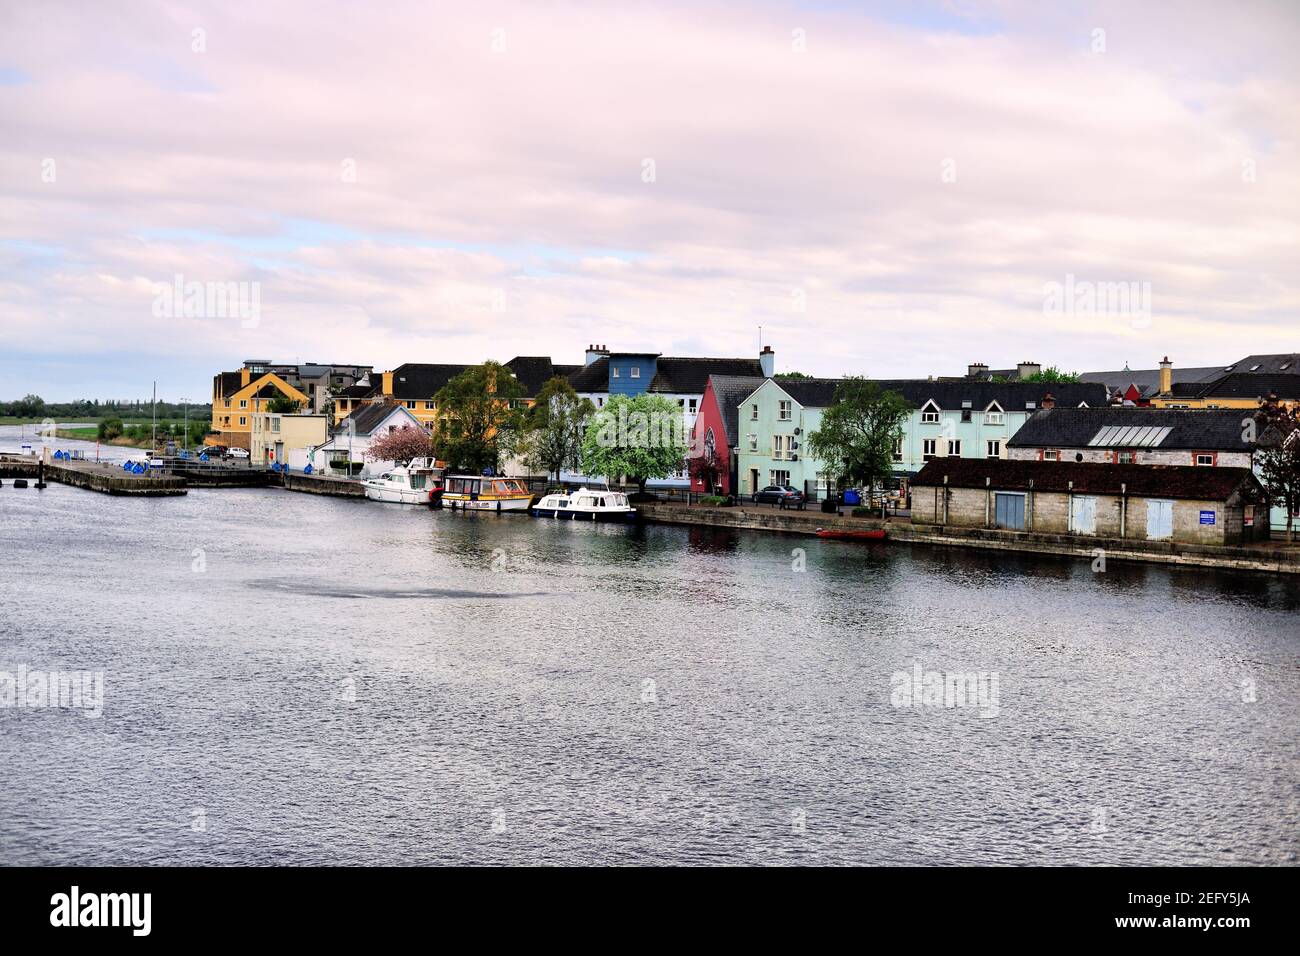 Athlone, Condado de Westmeath, Irlanda. Barcos amarrados en el río Shannon a lo largo de casas y edificios ordenados. Foto de stock